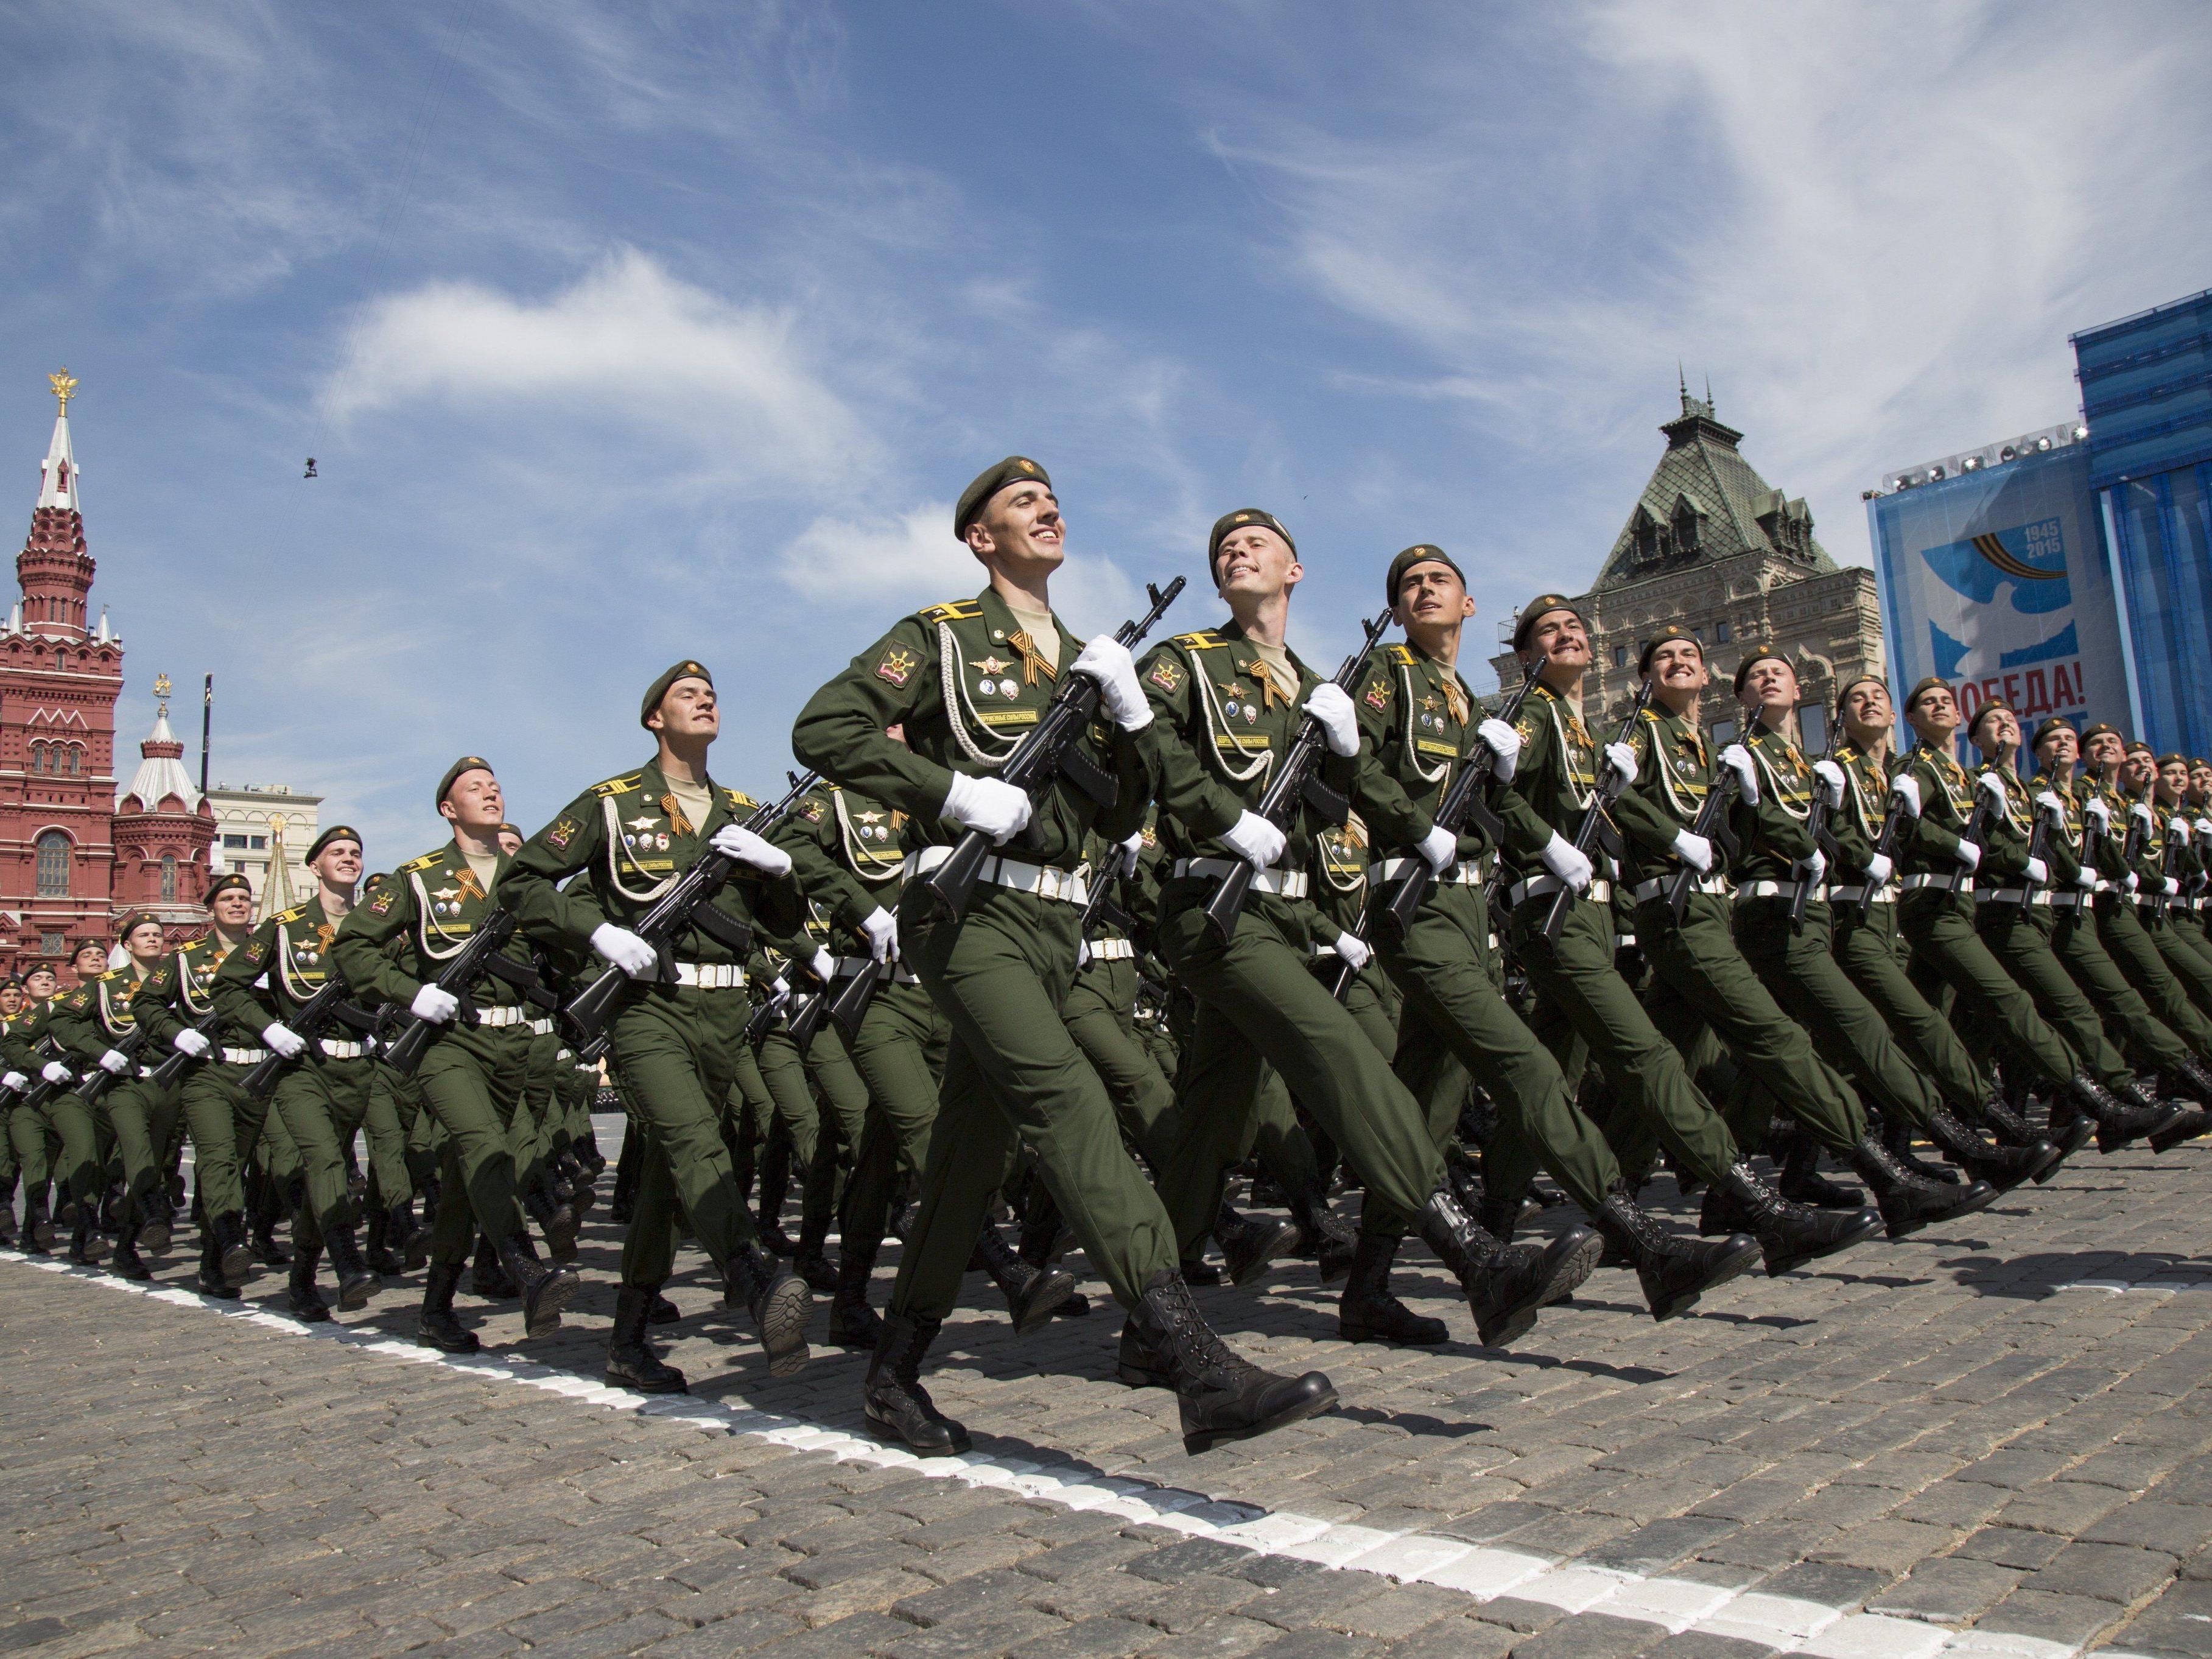 Moskau begeht den 70. Siegestag mit der größten Militärparade der Geschichte.